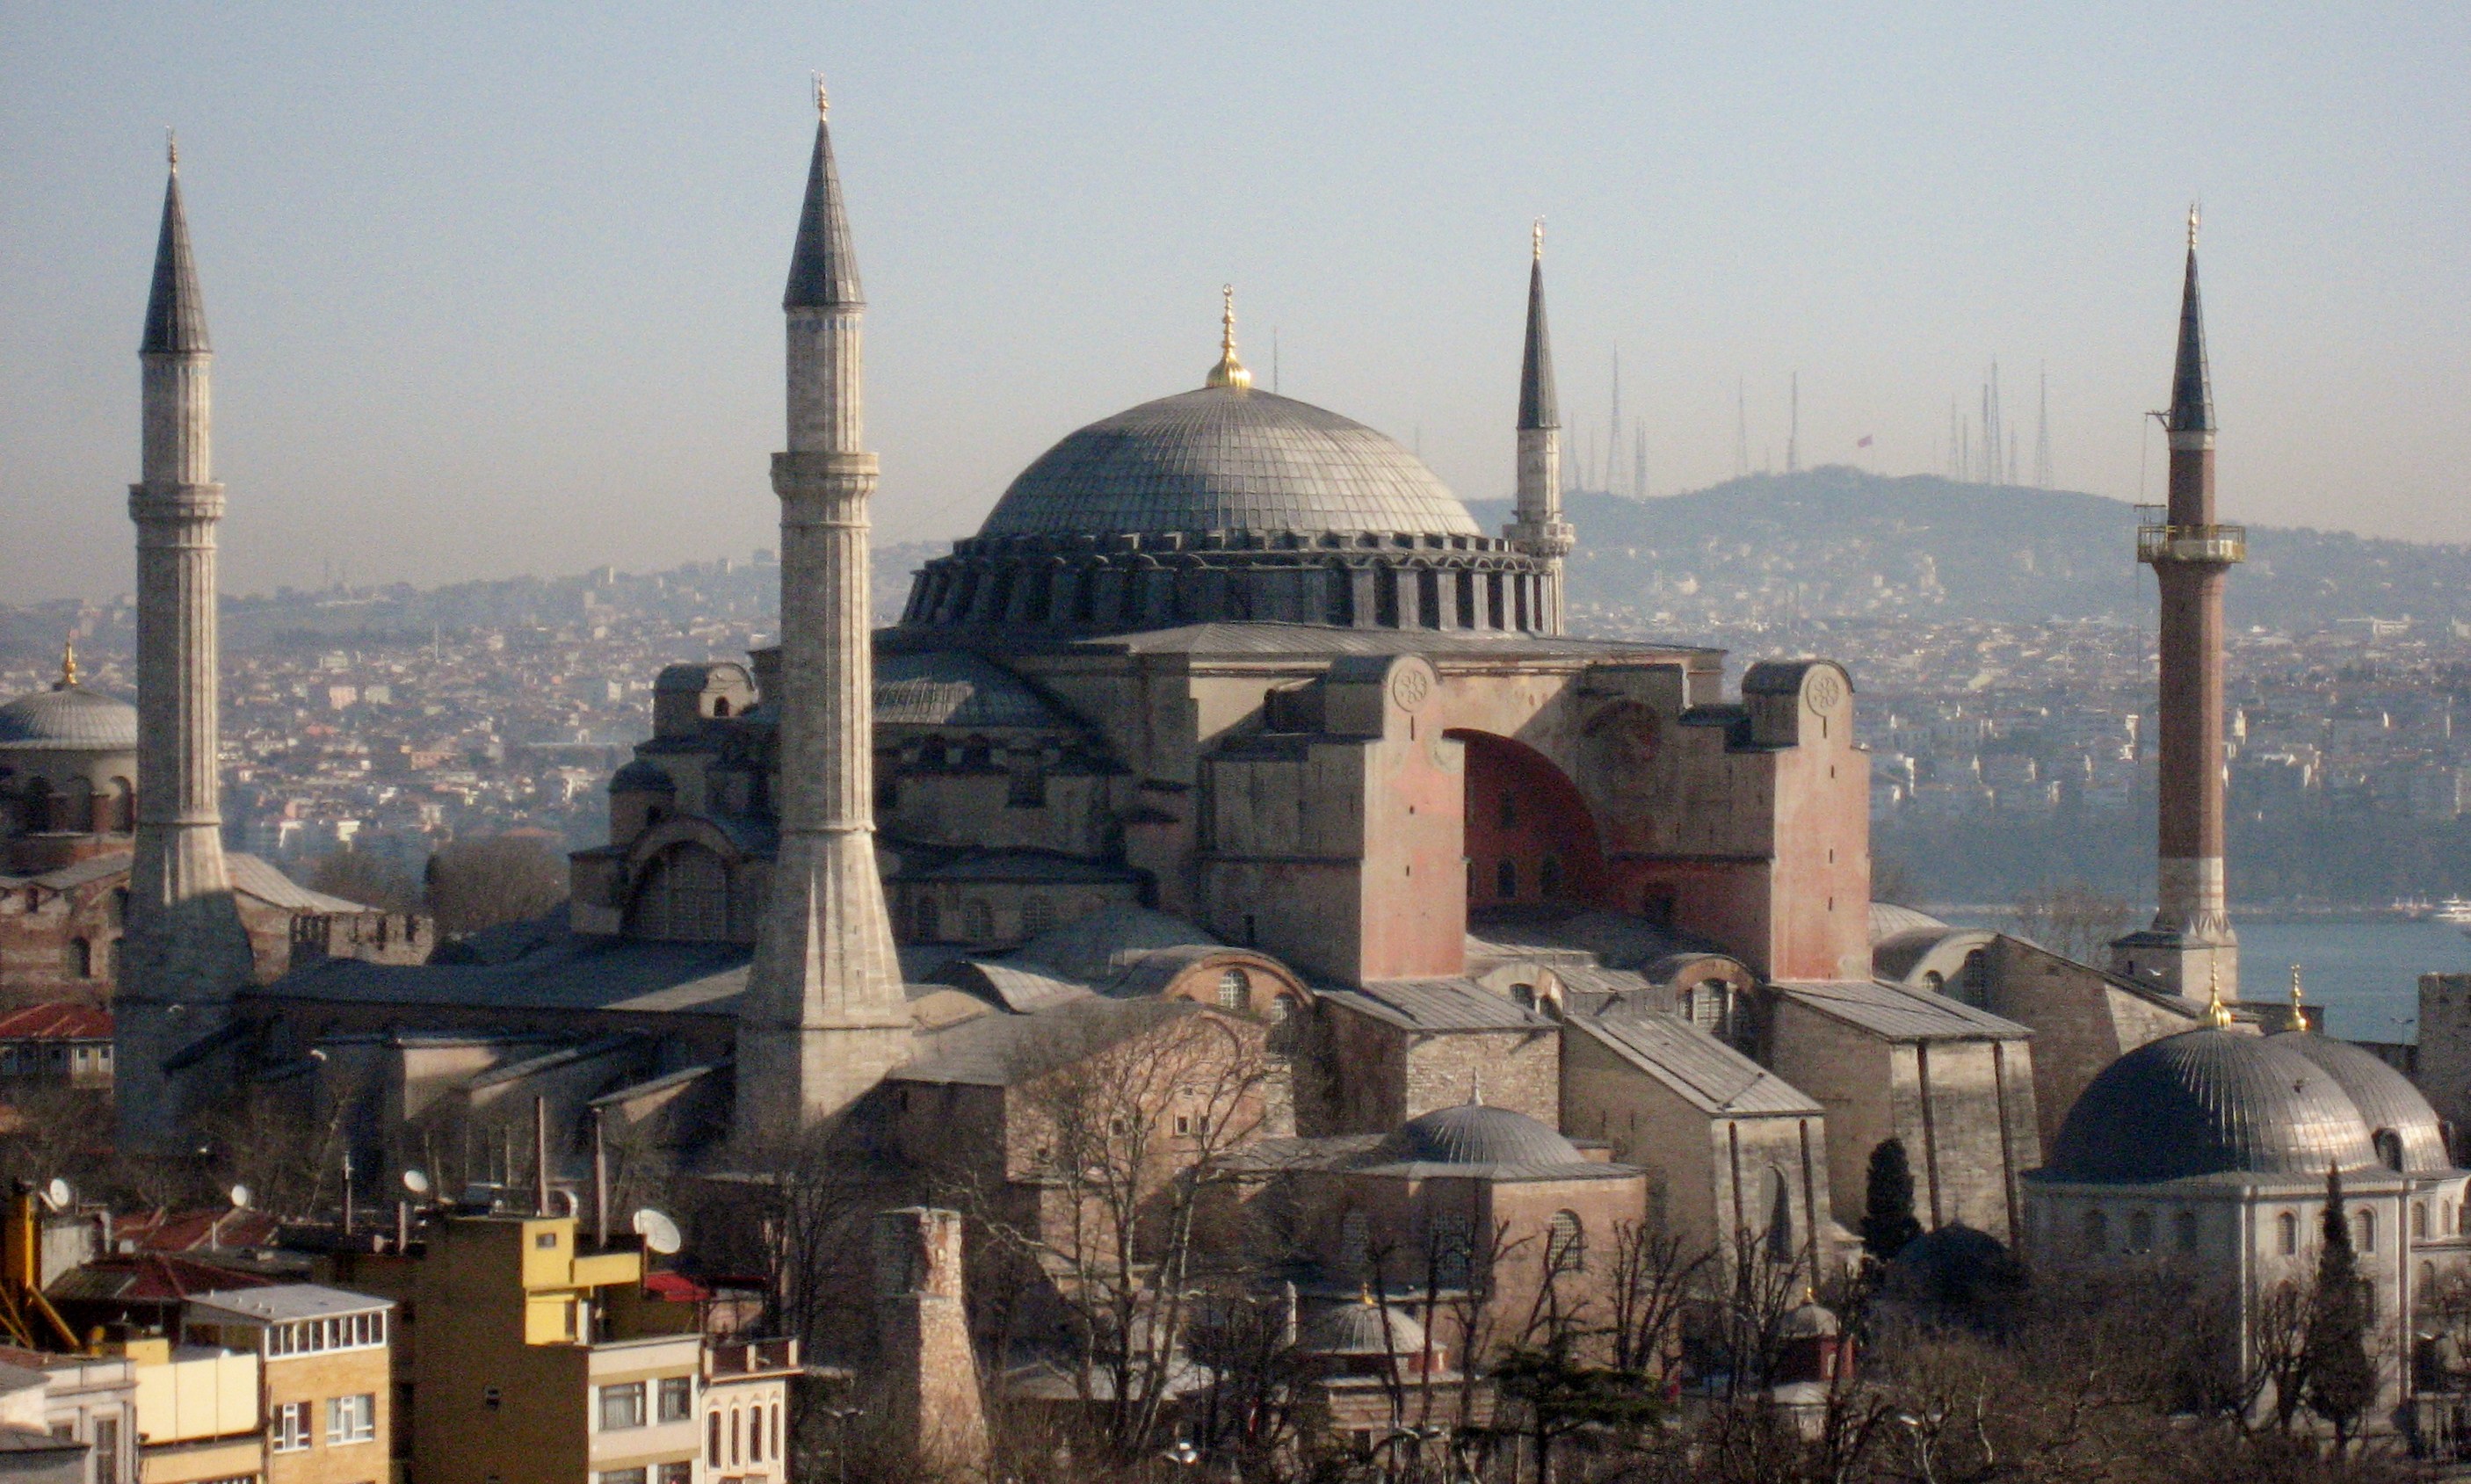 Hagia Sophia istanbu Turkey.jpg